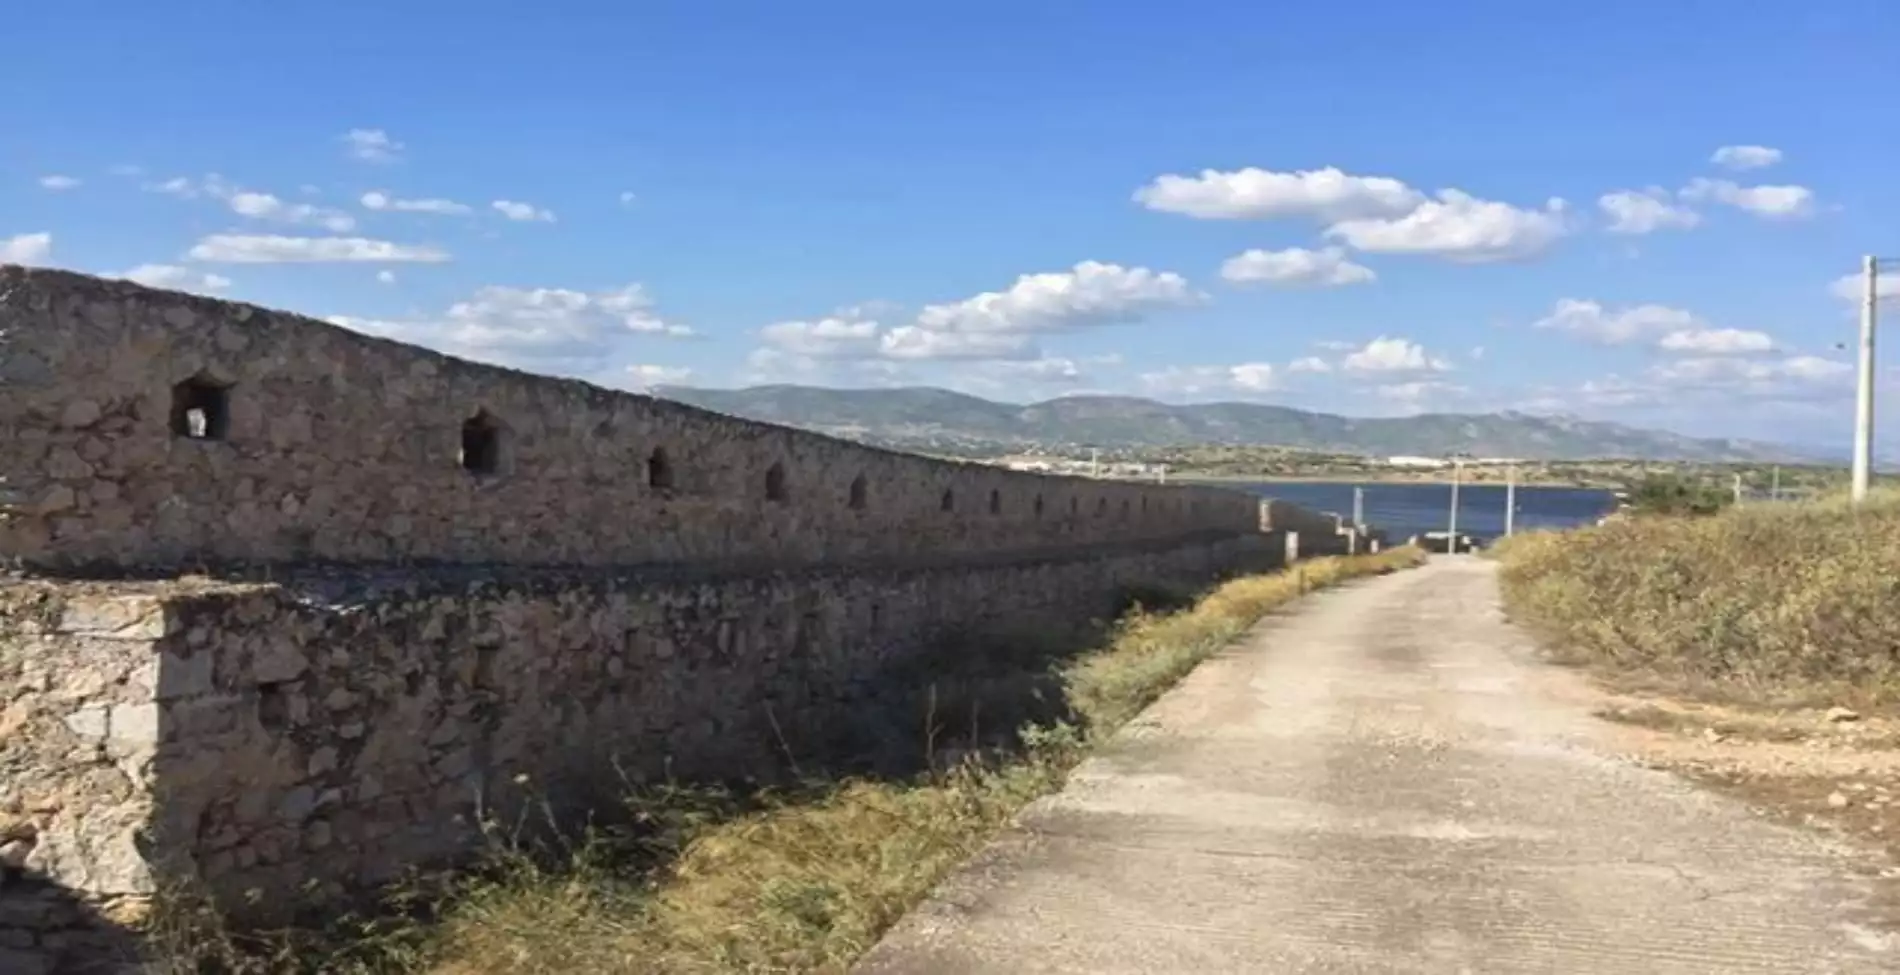 Το μεγάλο άγνωστο οχυρό της επανάστασης μια ανάσα από την Αθήνα2